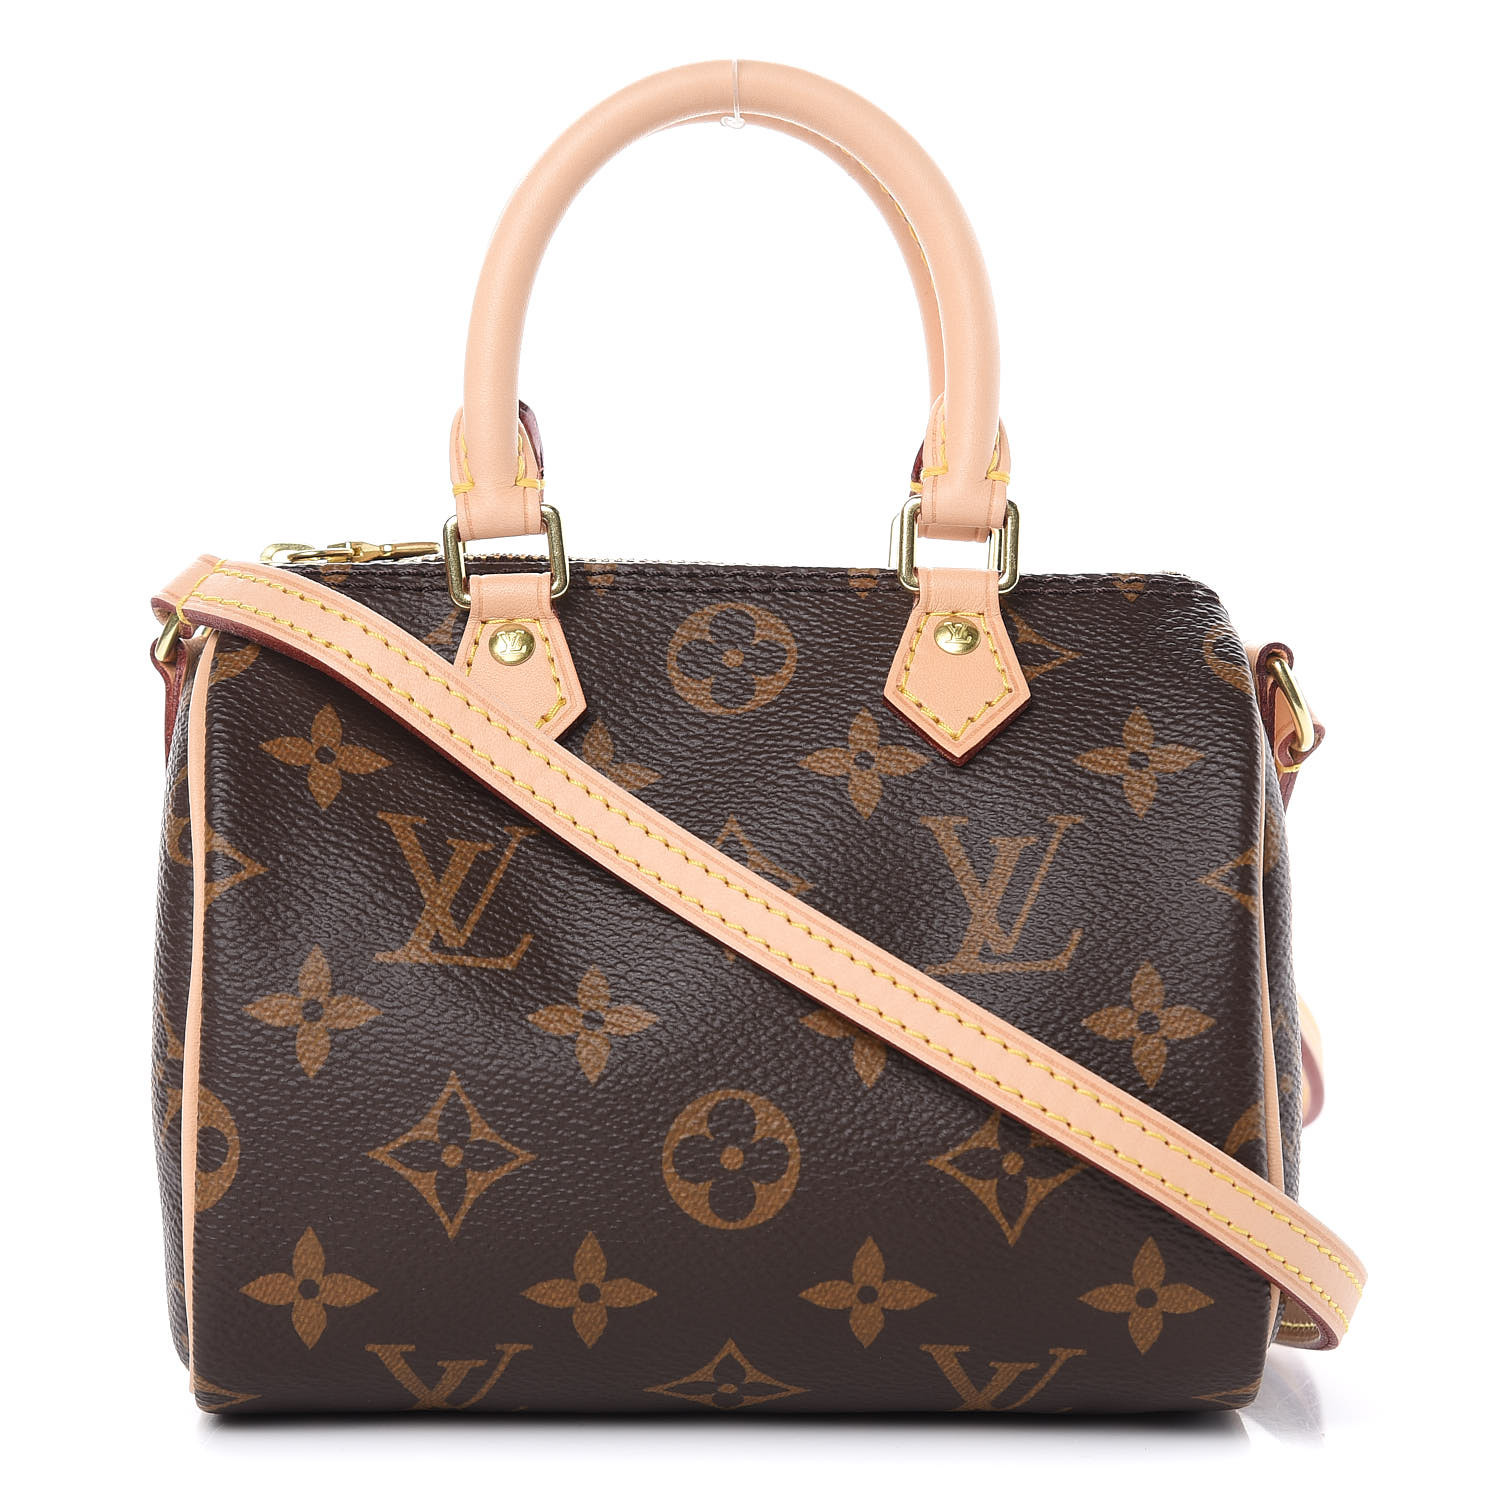 Louis Vuitton Palk Backpack-Fashionphile Unboxing